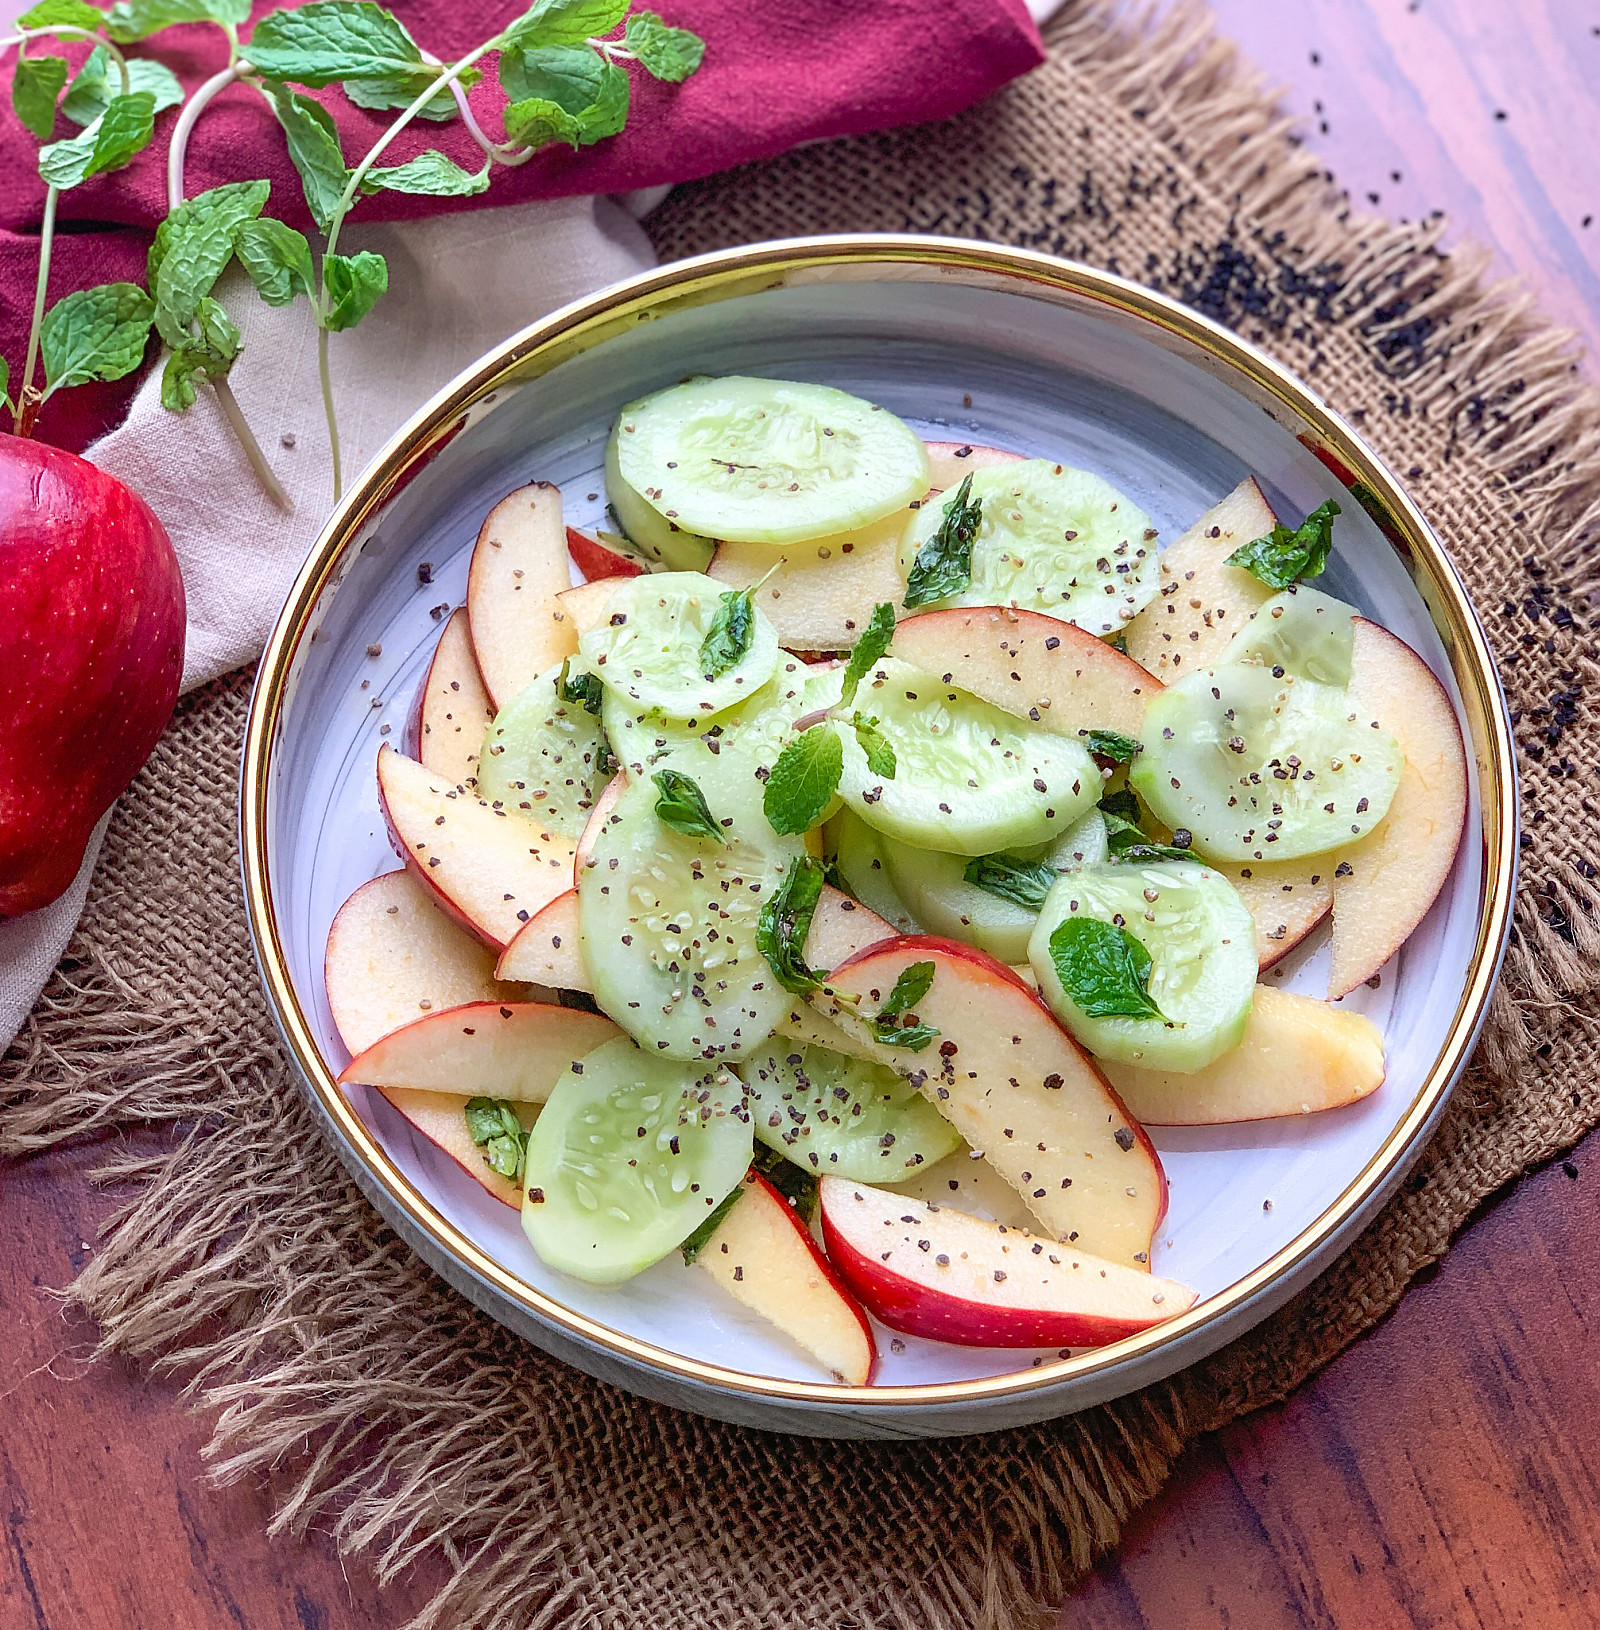 एप्पल कुकुम्बर सलाद रेसिपी - Apple Cucumber Salad Recipe